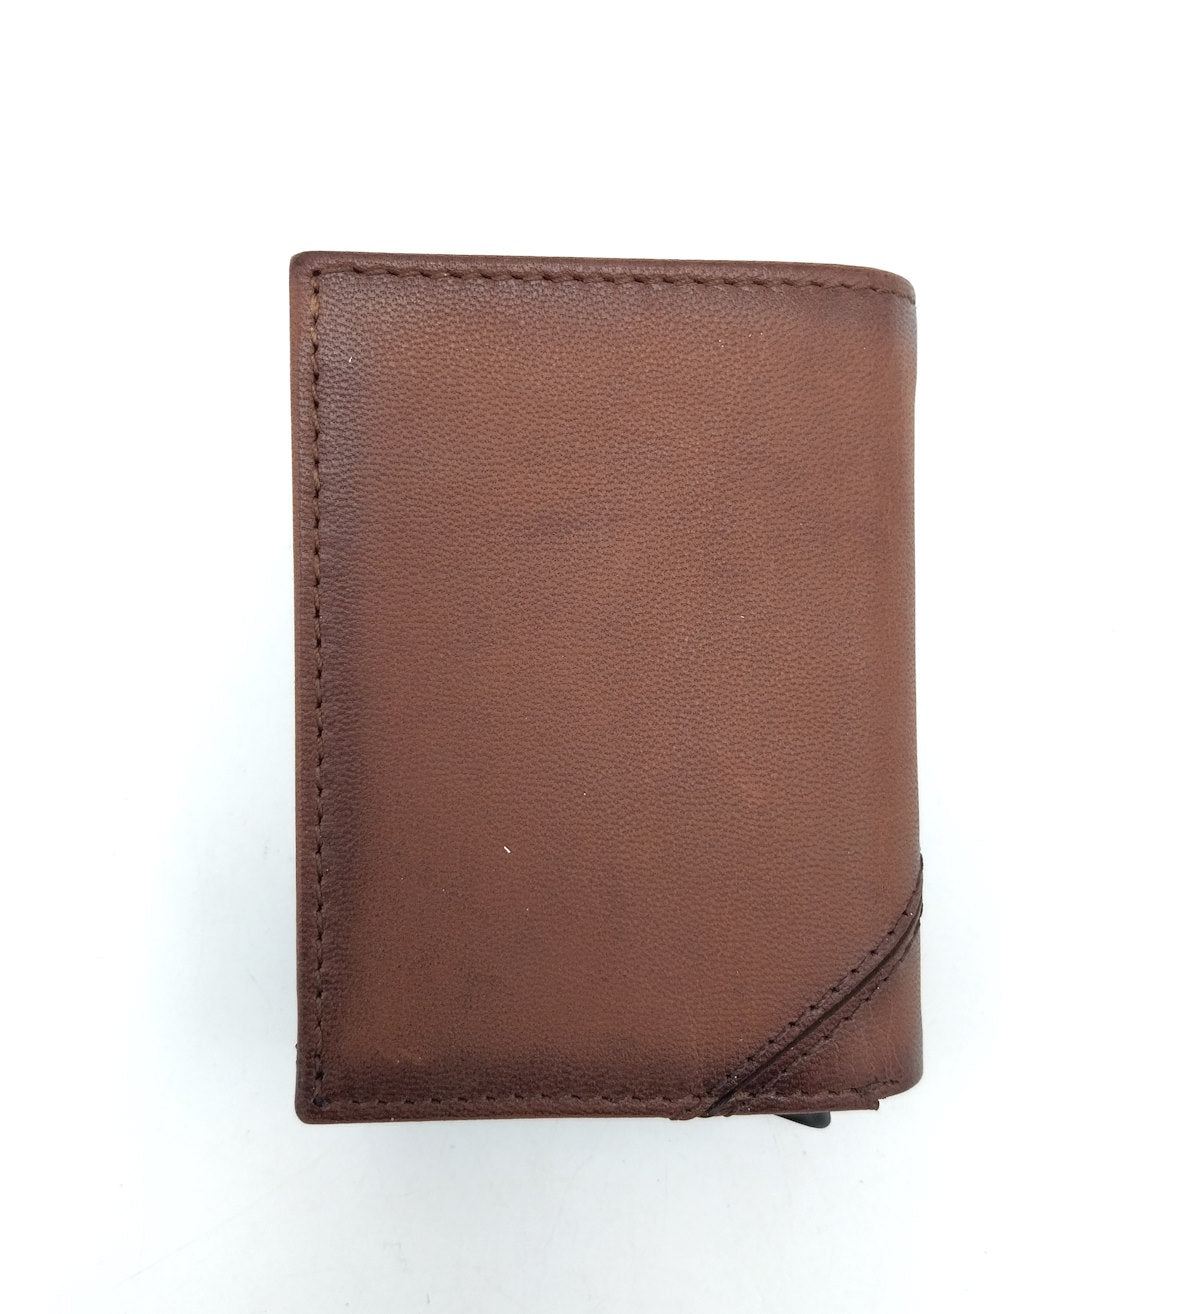 Genuine leather wallet, Wampum, art. pdk396-82